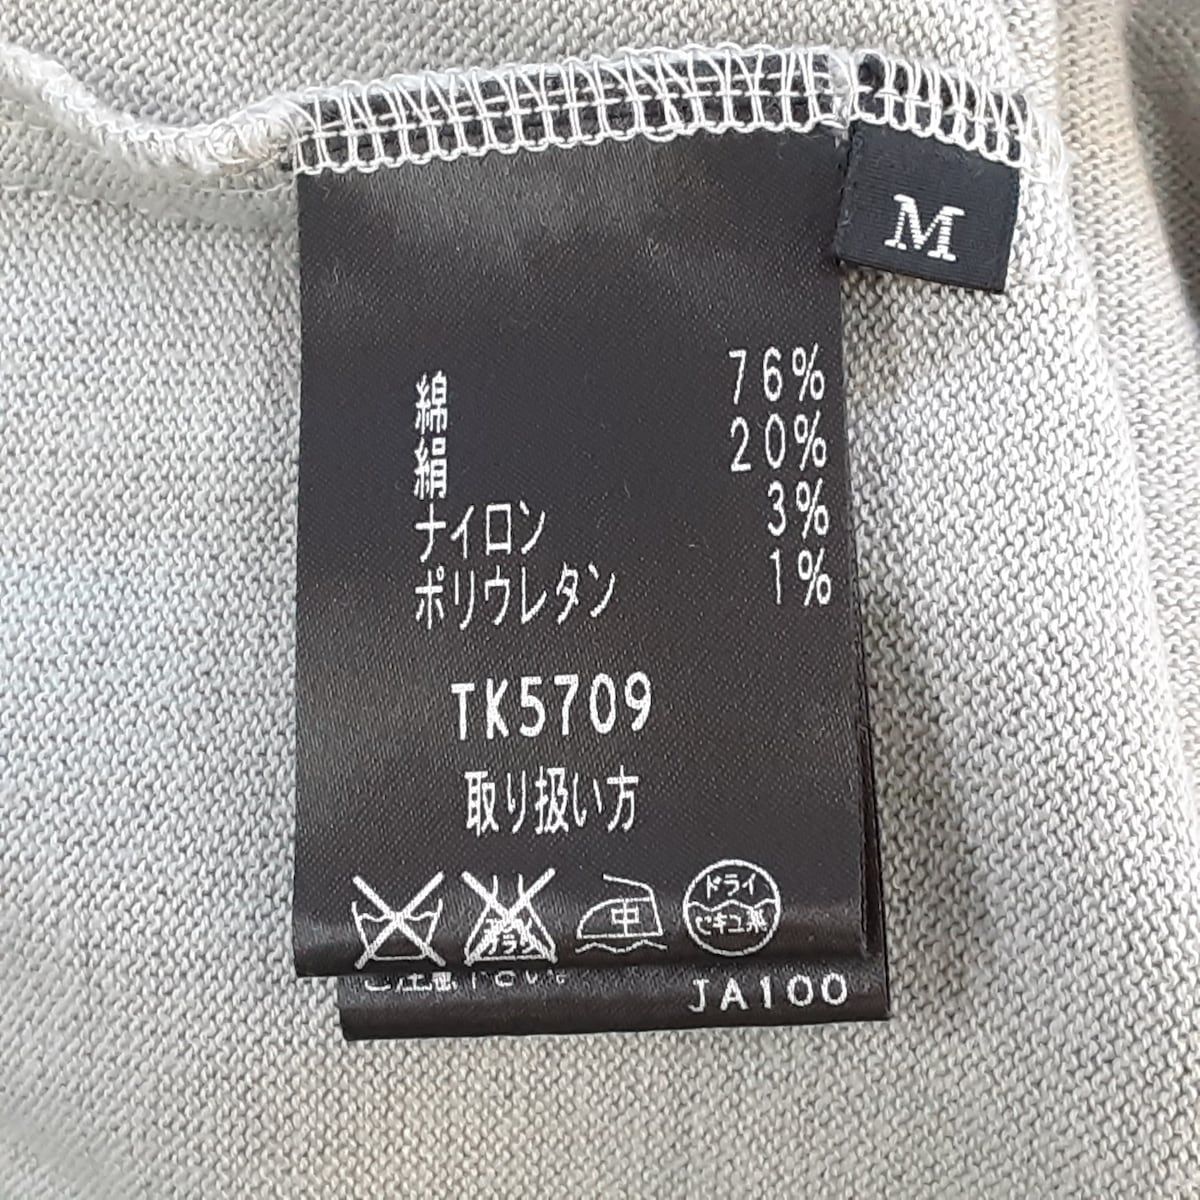 タエアシダ 長袖セーター サイズM美品  -レディース